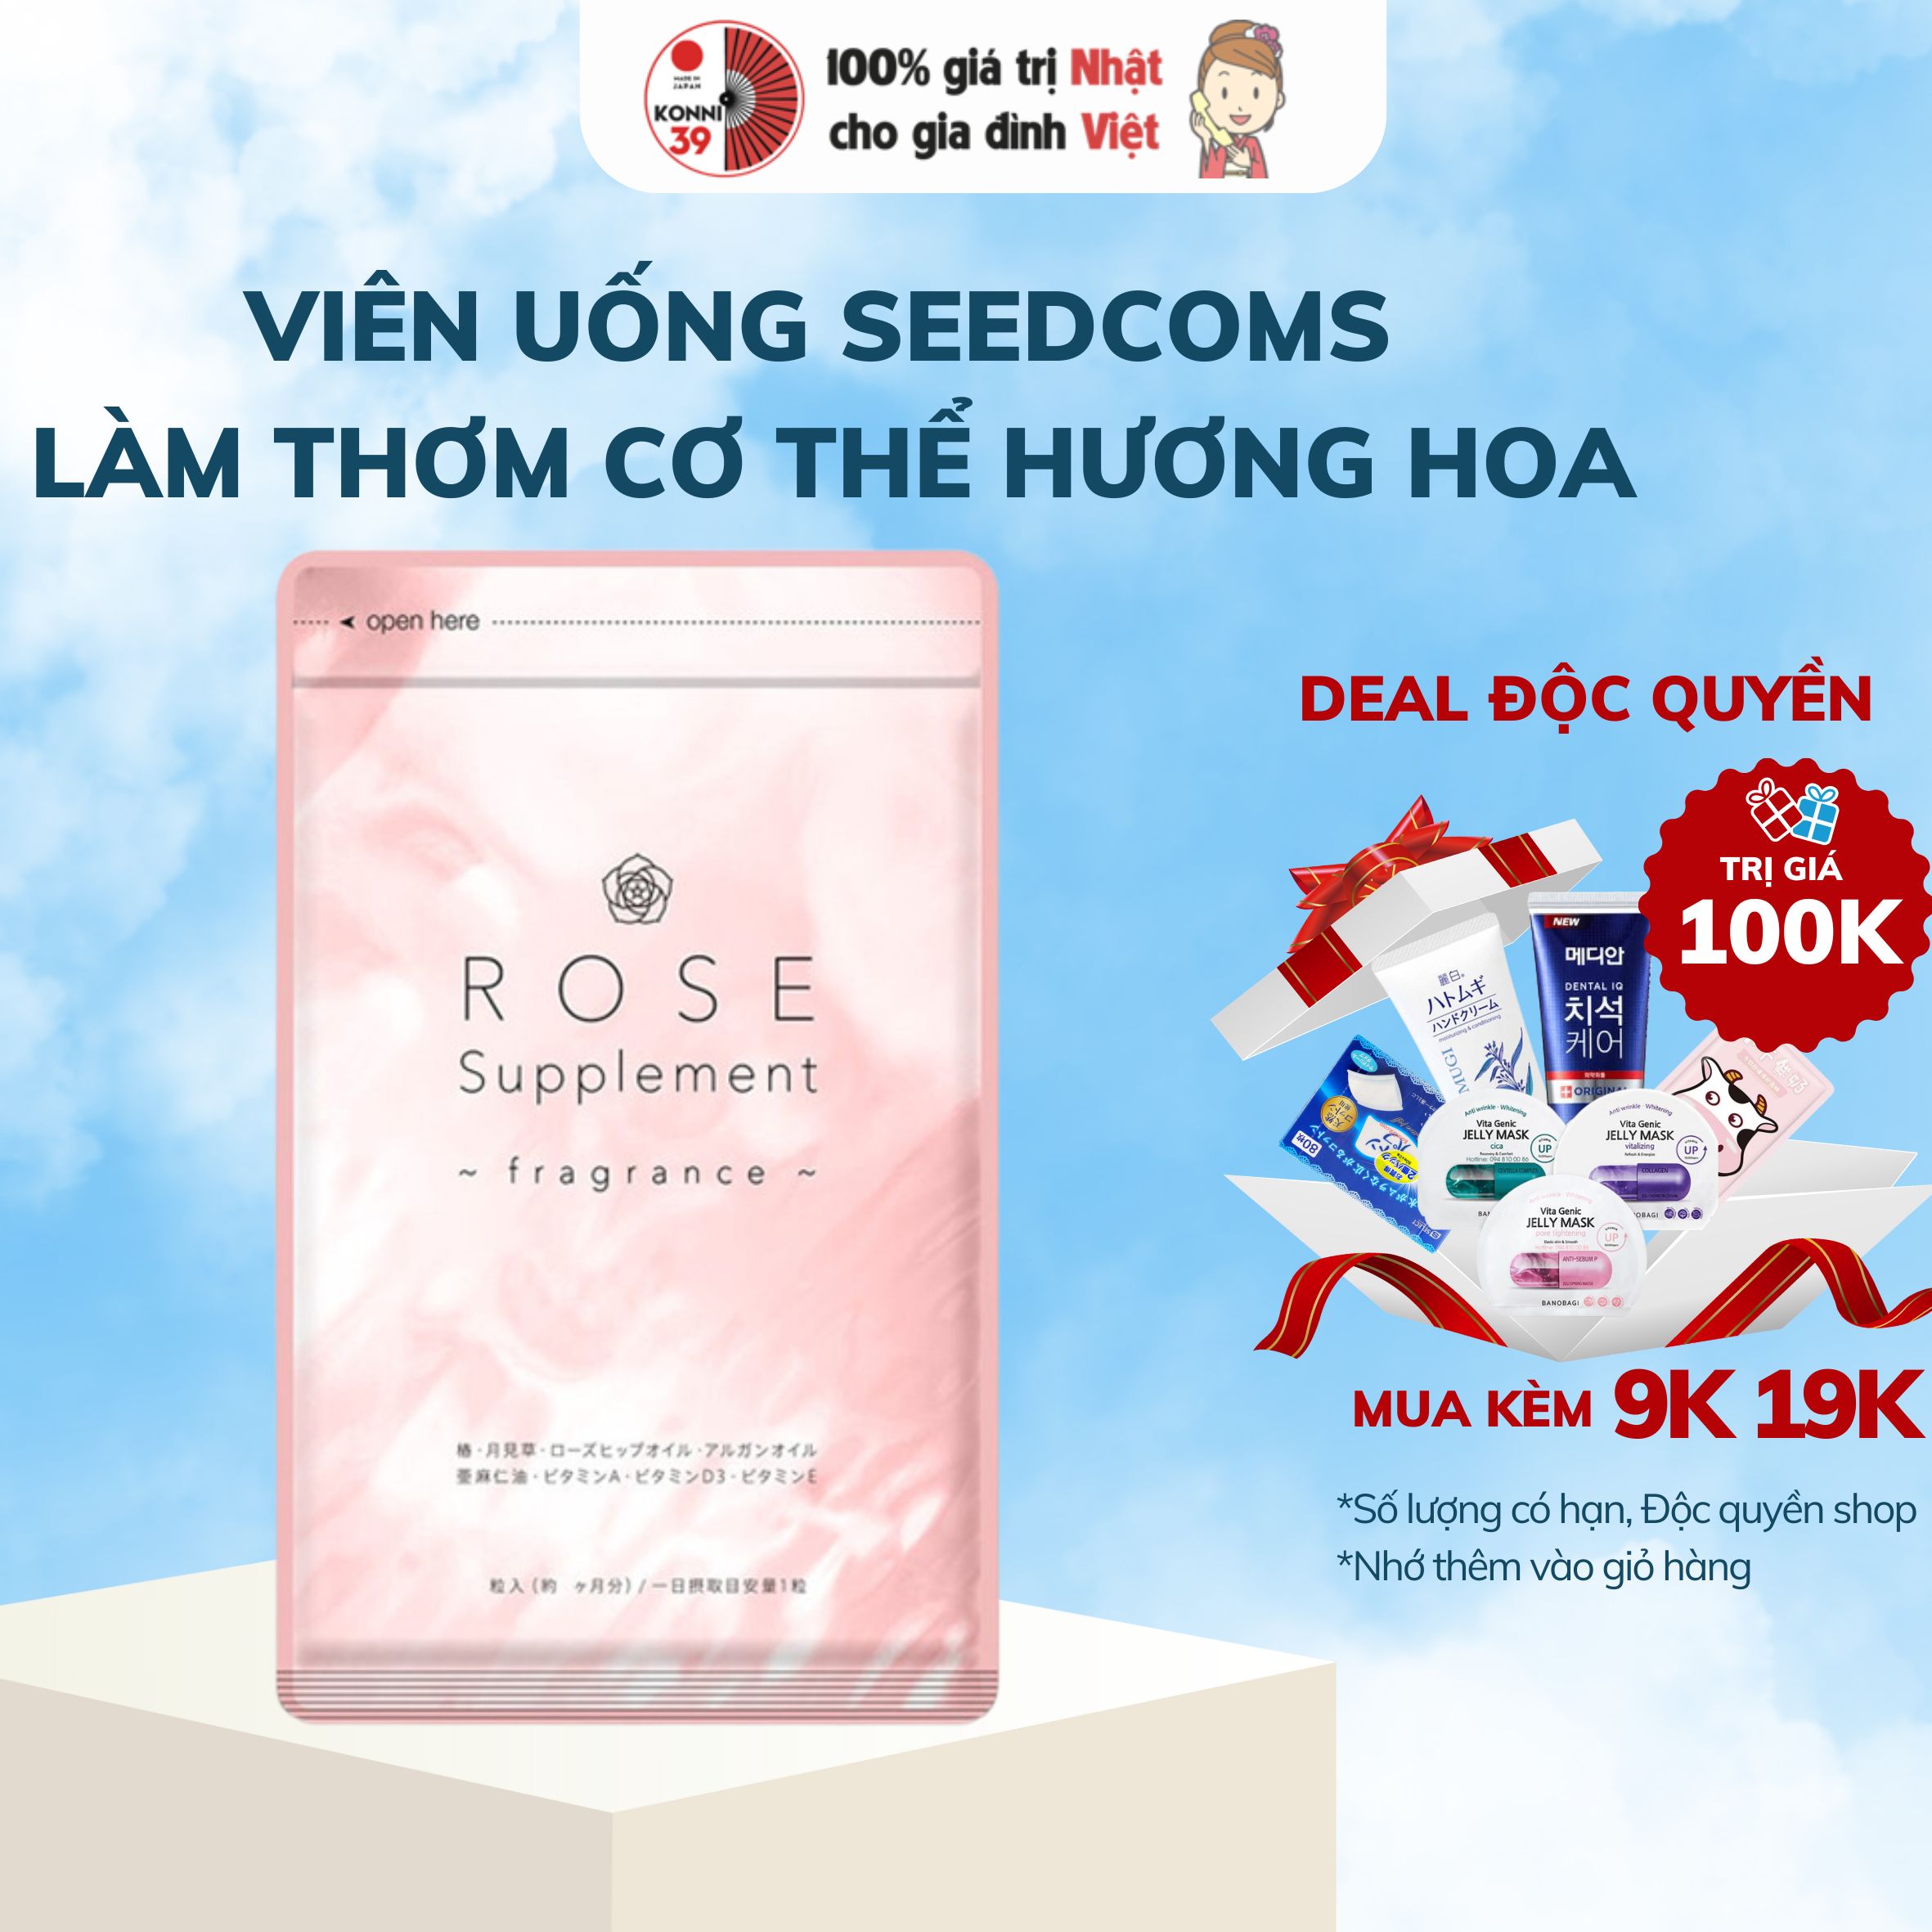 Viên uống Seedcoms Tạo Hương Thơm tự nhiên cho cơ thể Rose Supplement chiết xuất Hoa và Thảo Mộc 30 ngày - Konni39